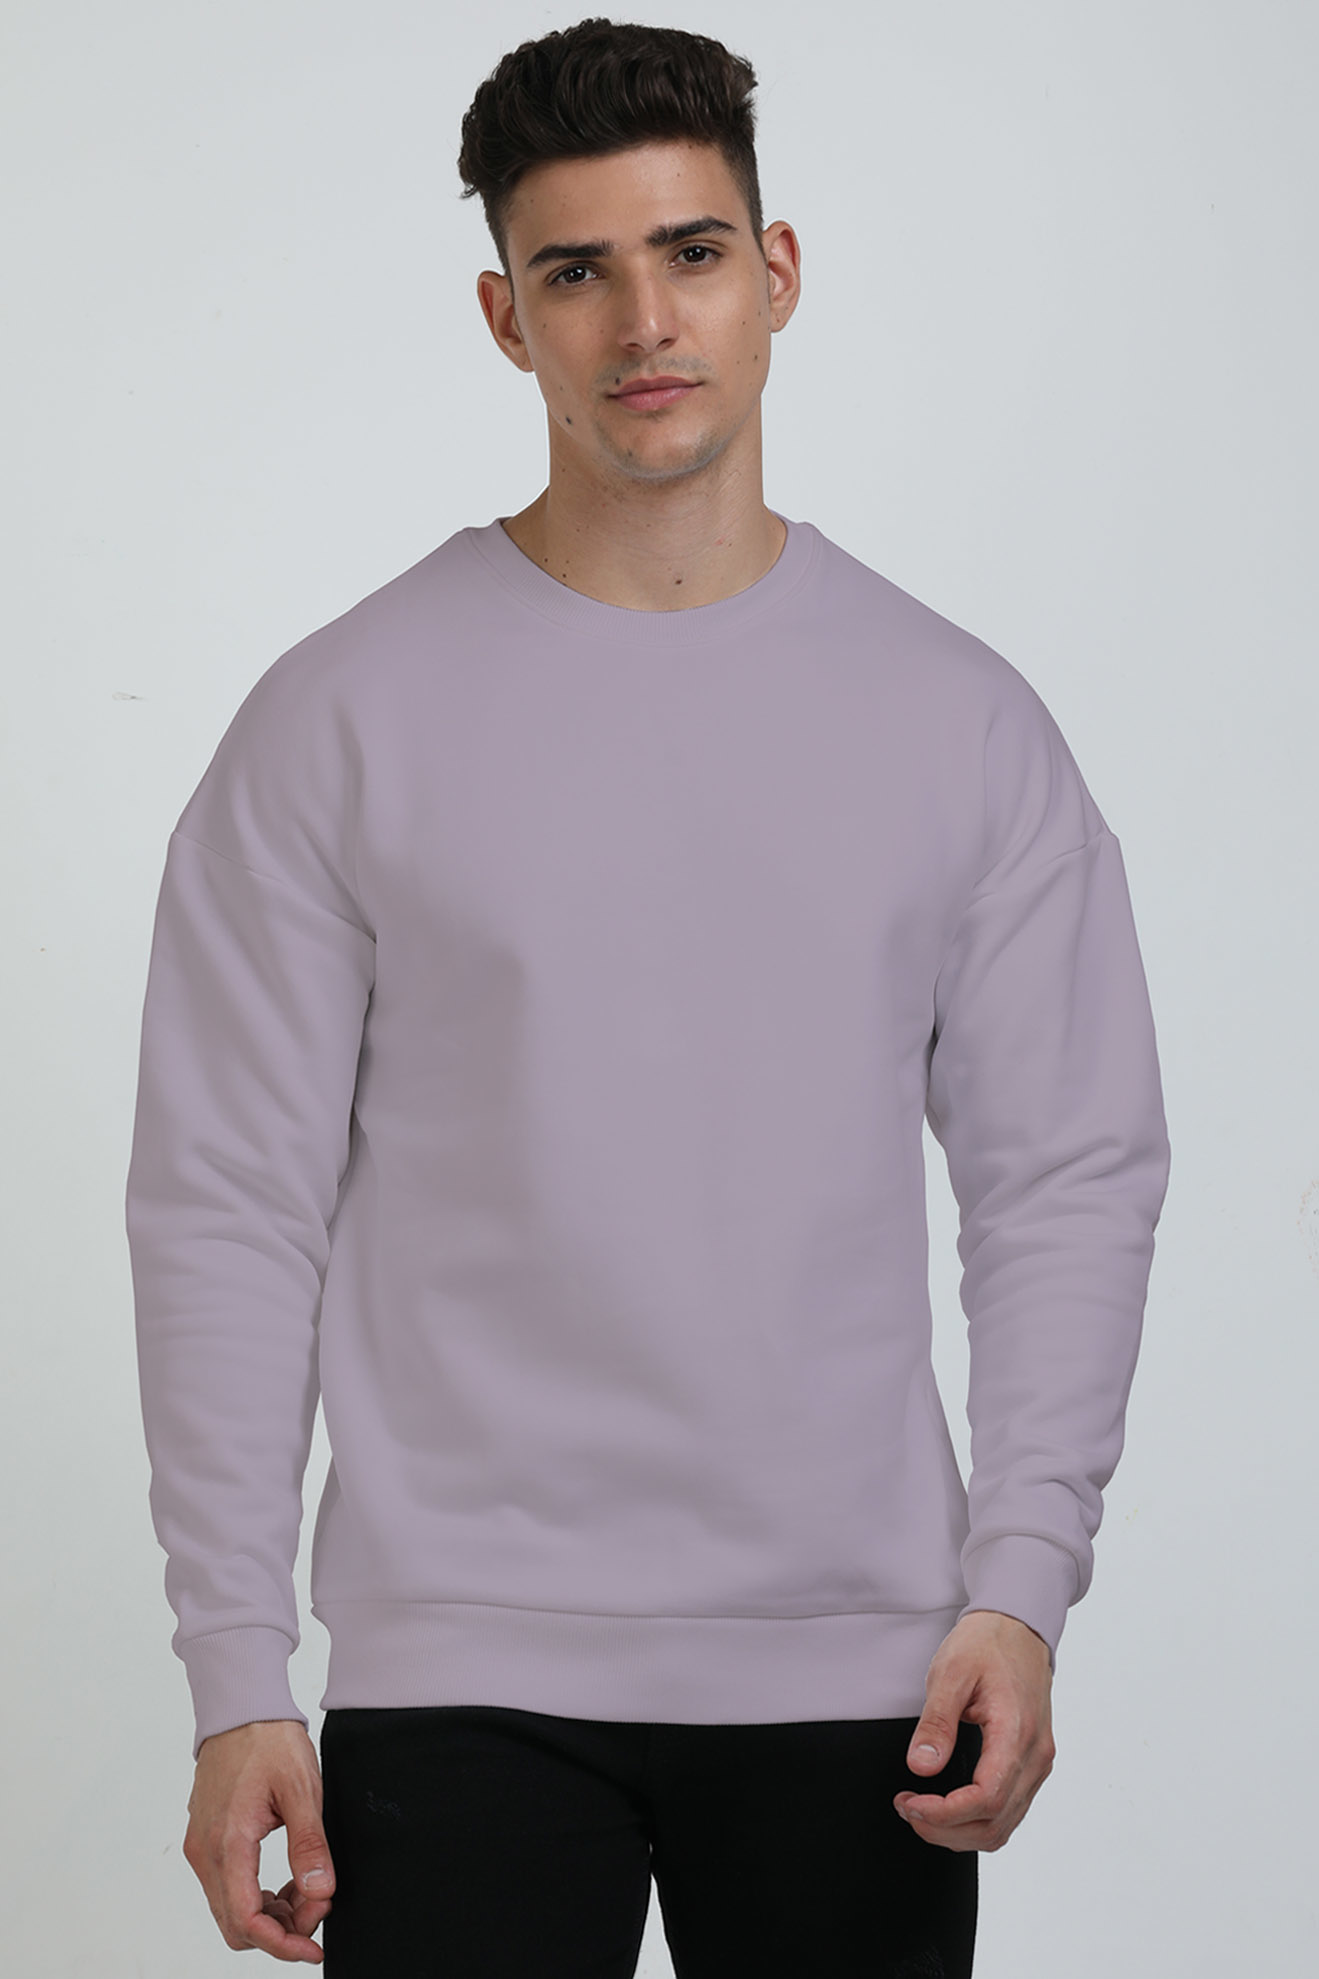 Unisex Oversized Sweatshirts